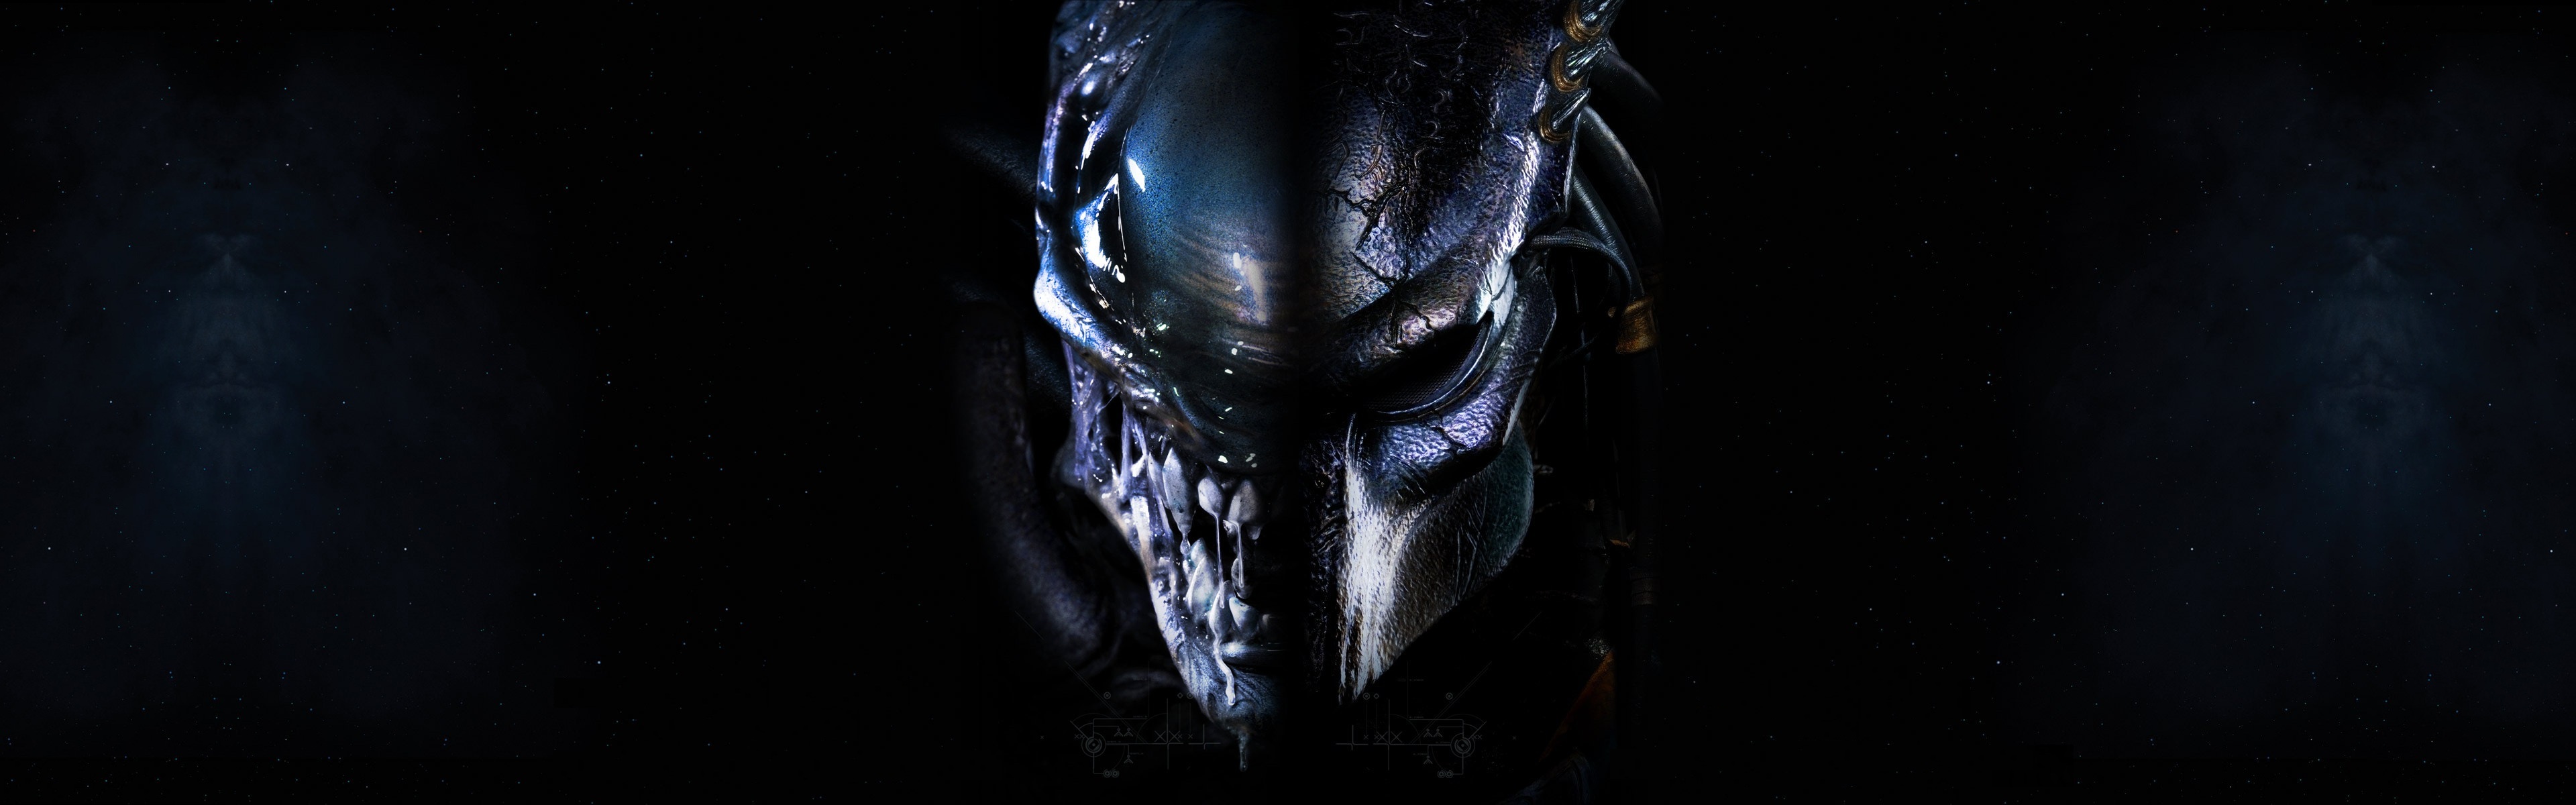 avp: alien vs predator, movie, predator Free Stock Photo